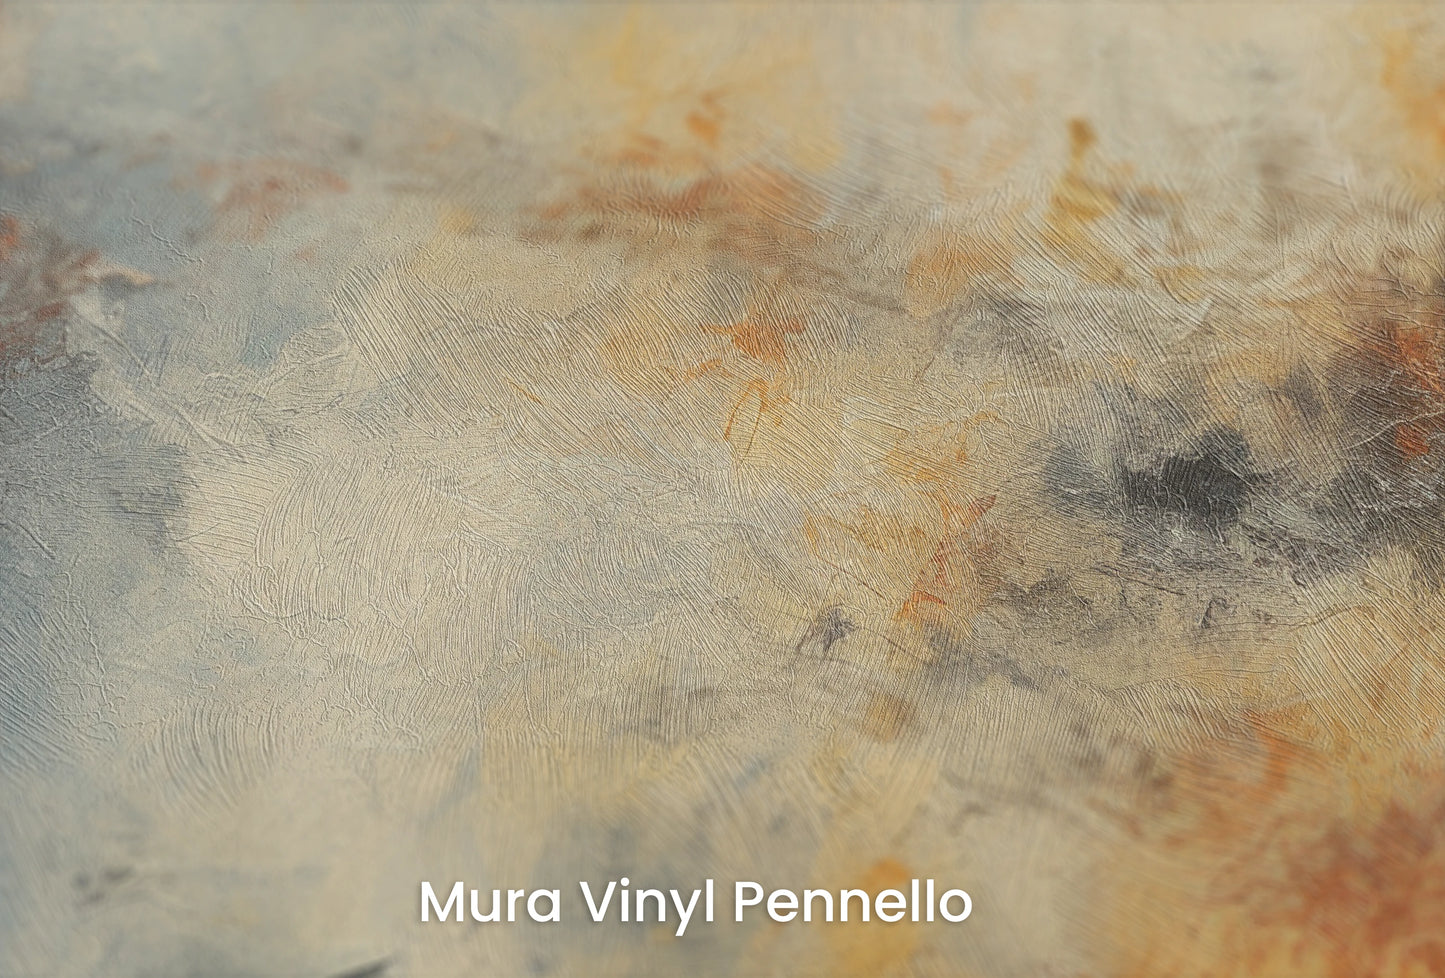 Zbliżenie na artystyczną fototapetę o nazwie Lunar Solitude na podłożu Mura Vinyl Pennello - faktura pociągnięć pędzla malarskiego.